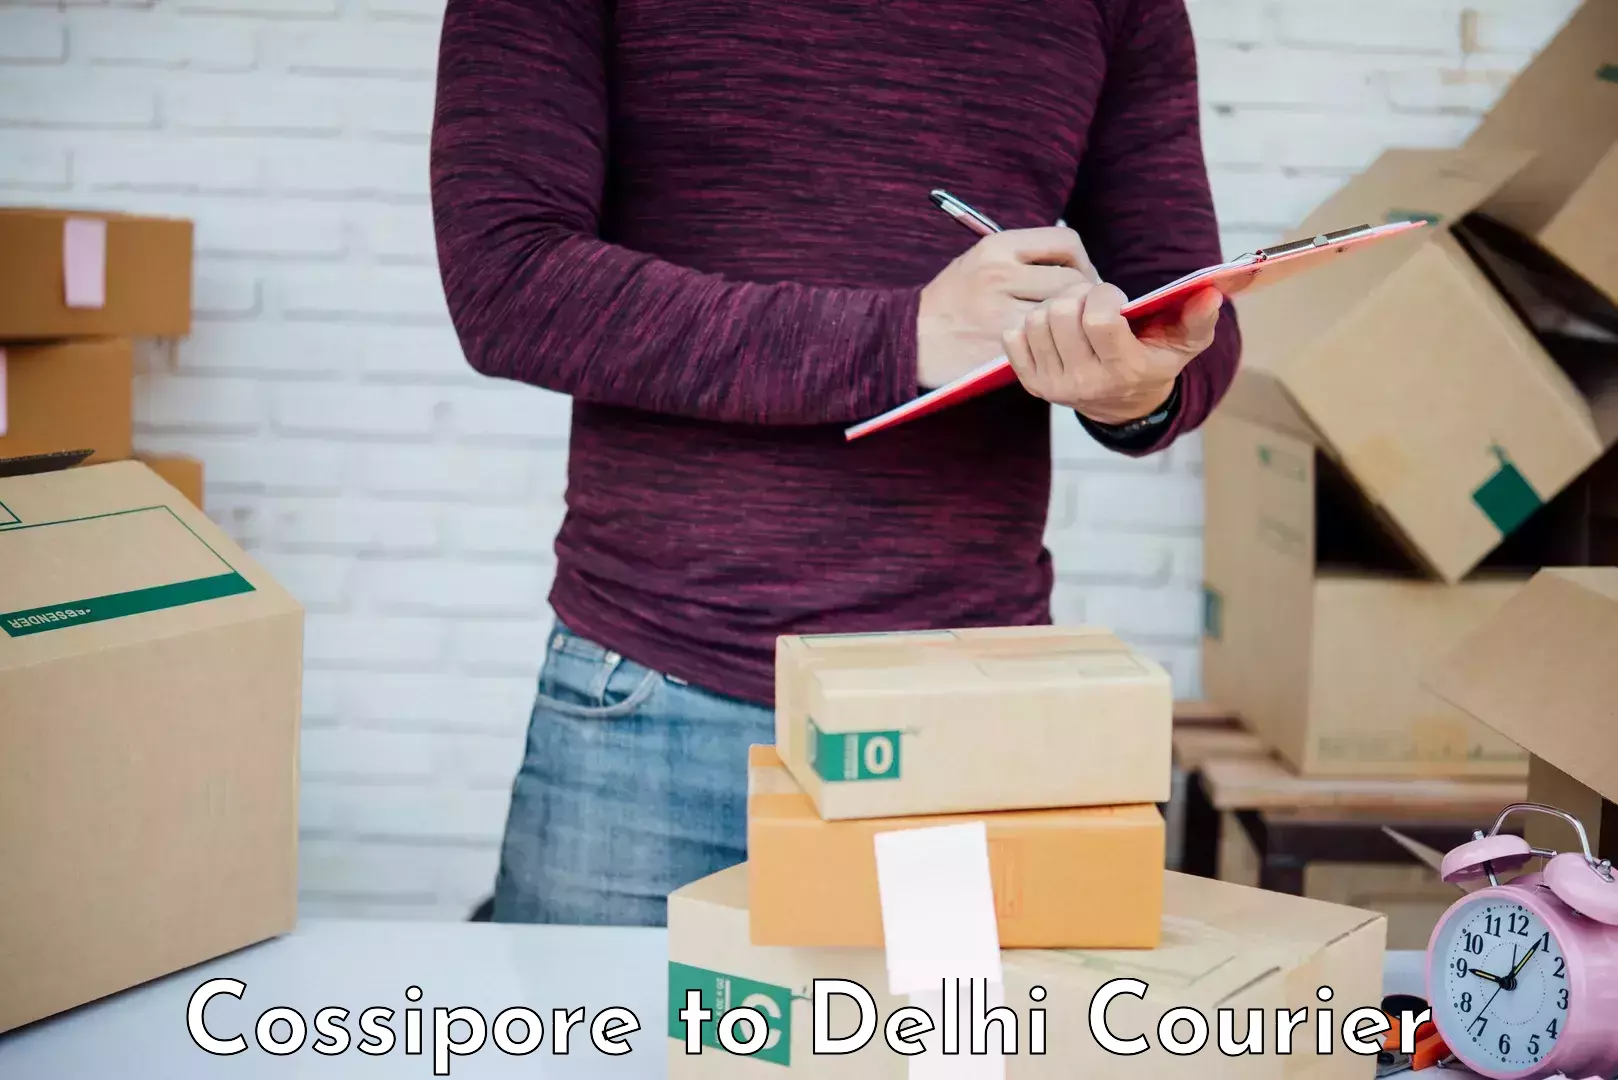 Furniture delivery service Cossipore to University of Delhi